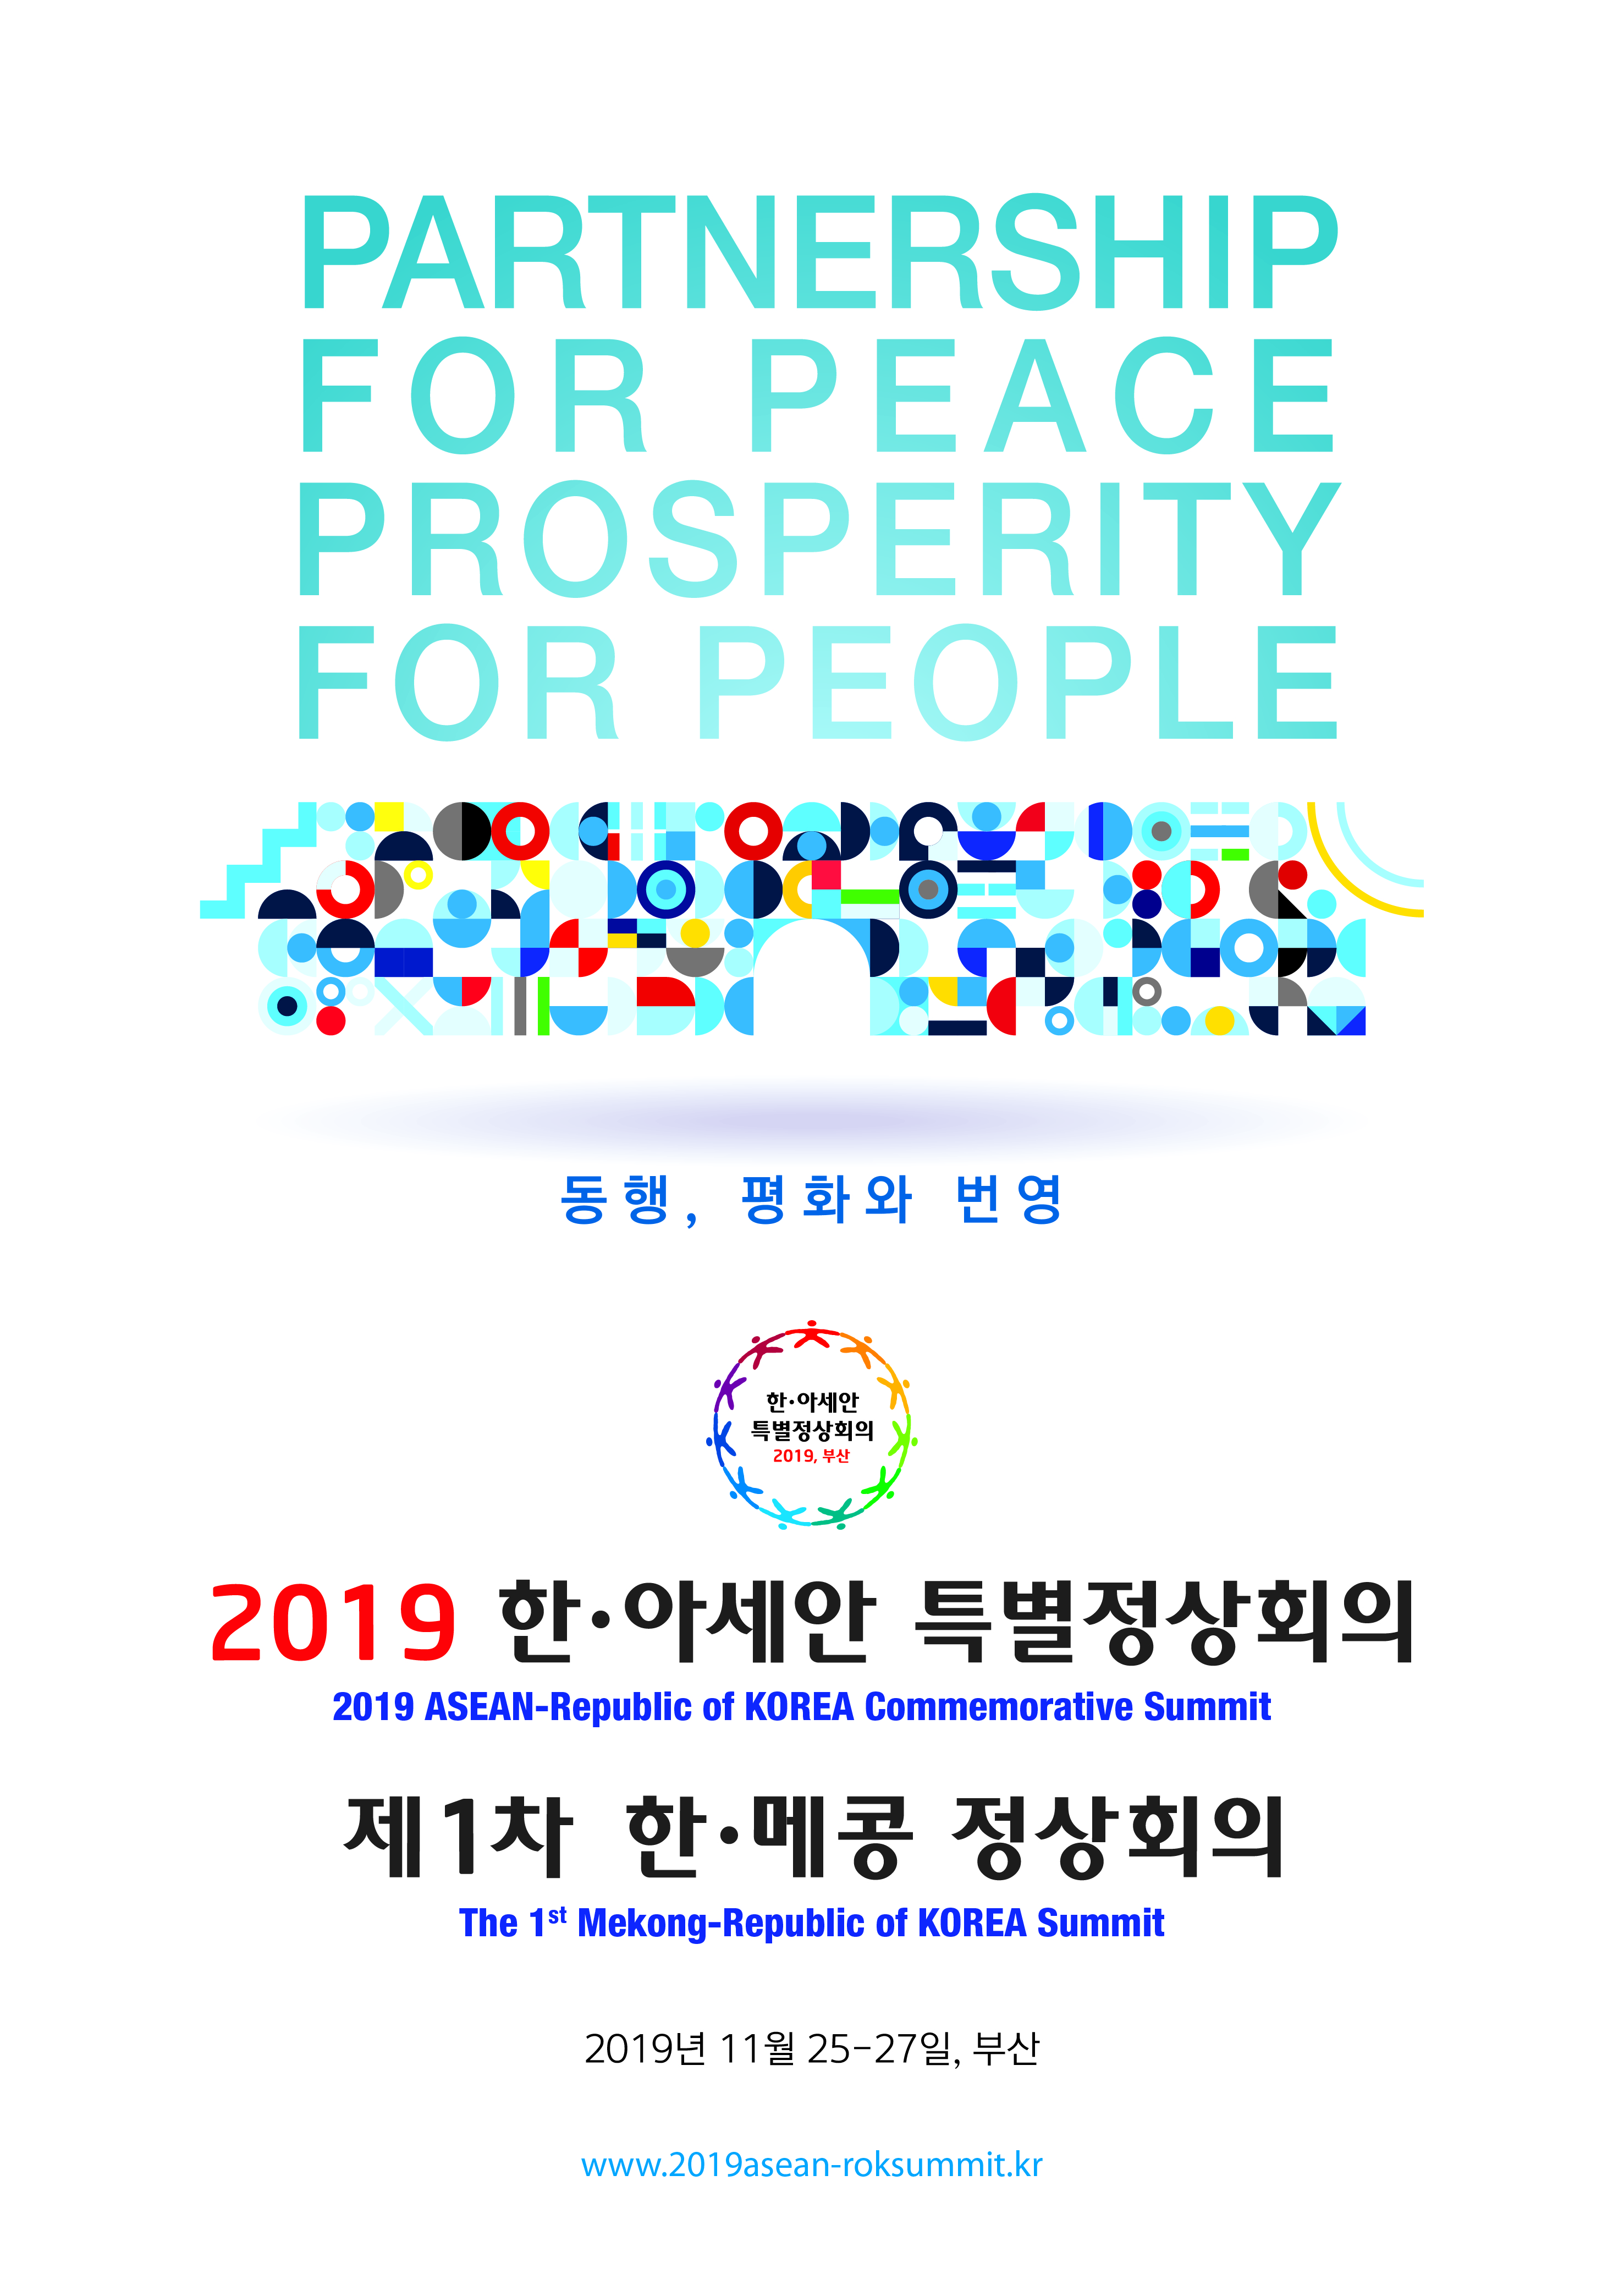 동행, 평화와 번영  PARTNERSHIP FOR PEACE, PROSPERITY FOR PEOPLE  2019 한·아세안 특별정상회의(2019 ASEAN-Republic of KOREA Commemorative Summit)  제1차 한·메콩 정상회의(The 1st Mekong-Republic of KOREA Summit)  2019년 11월 25-27일, 부산